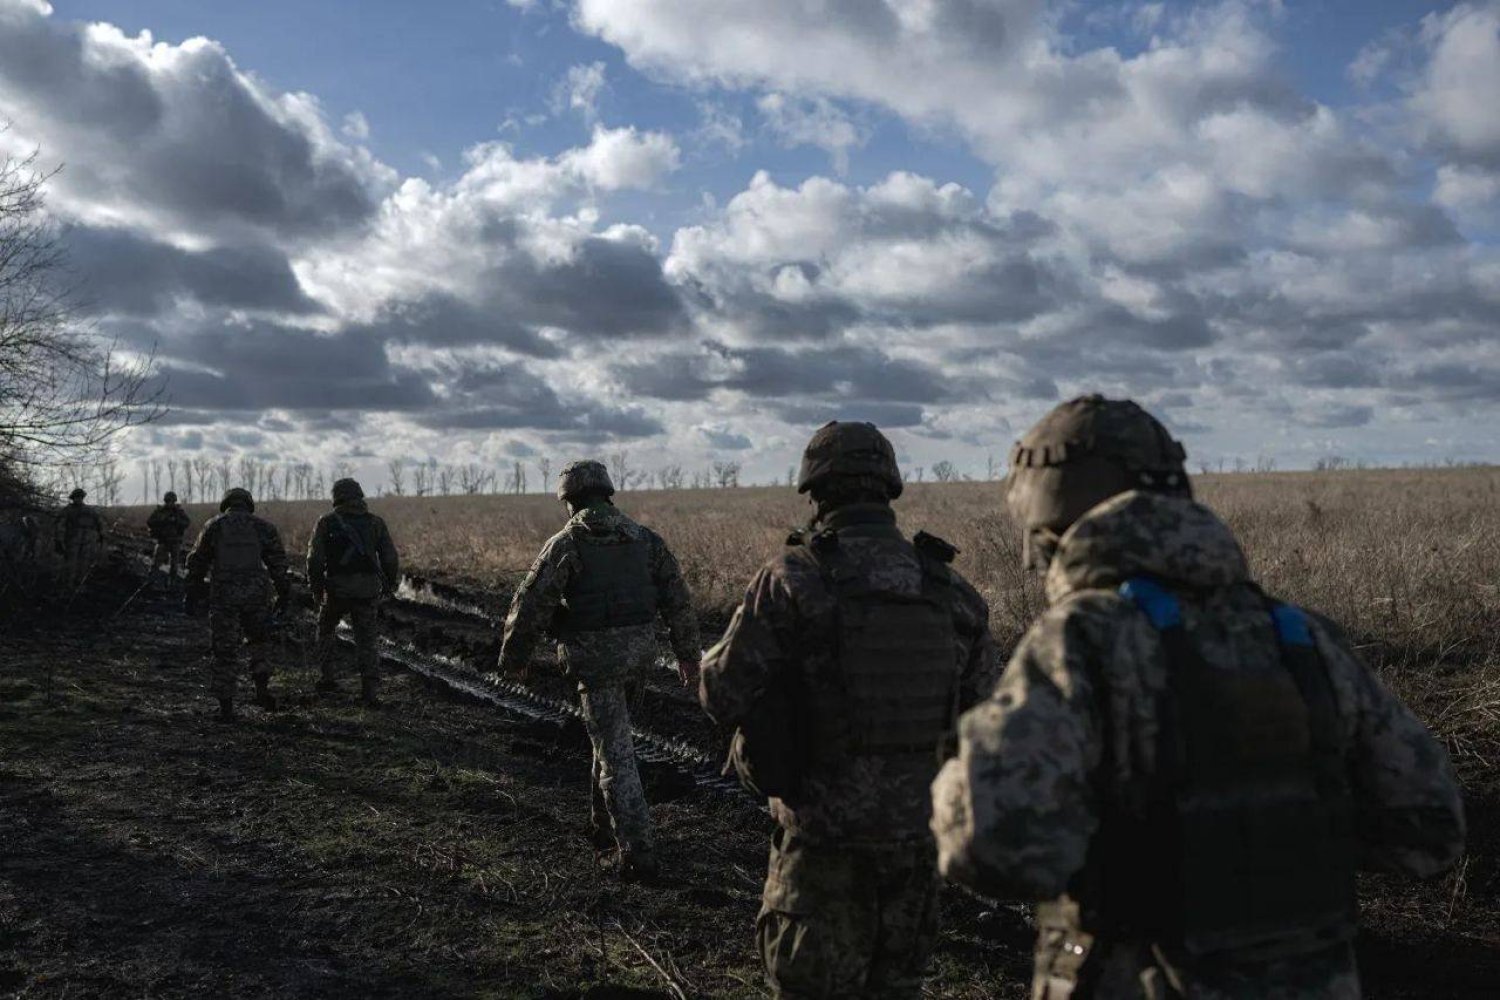 جنود أوكرانيون قرب إحدى جبهات القتال شرق أوكرانيا (قناة الرئيس الأوكراني على تطبيق تلغرام)